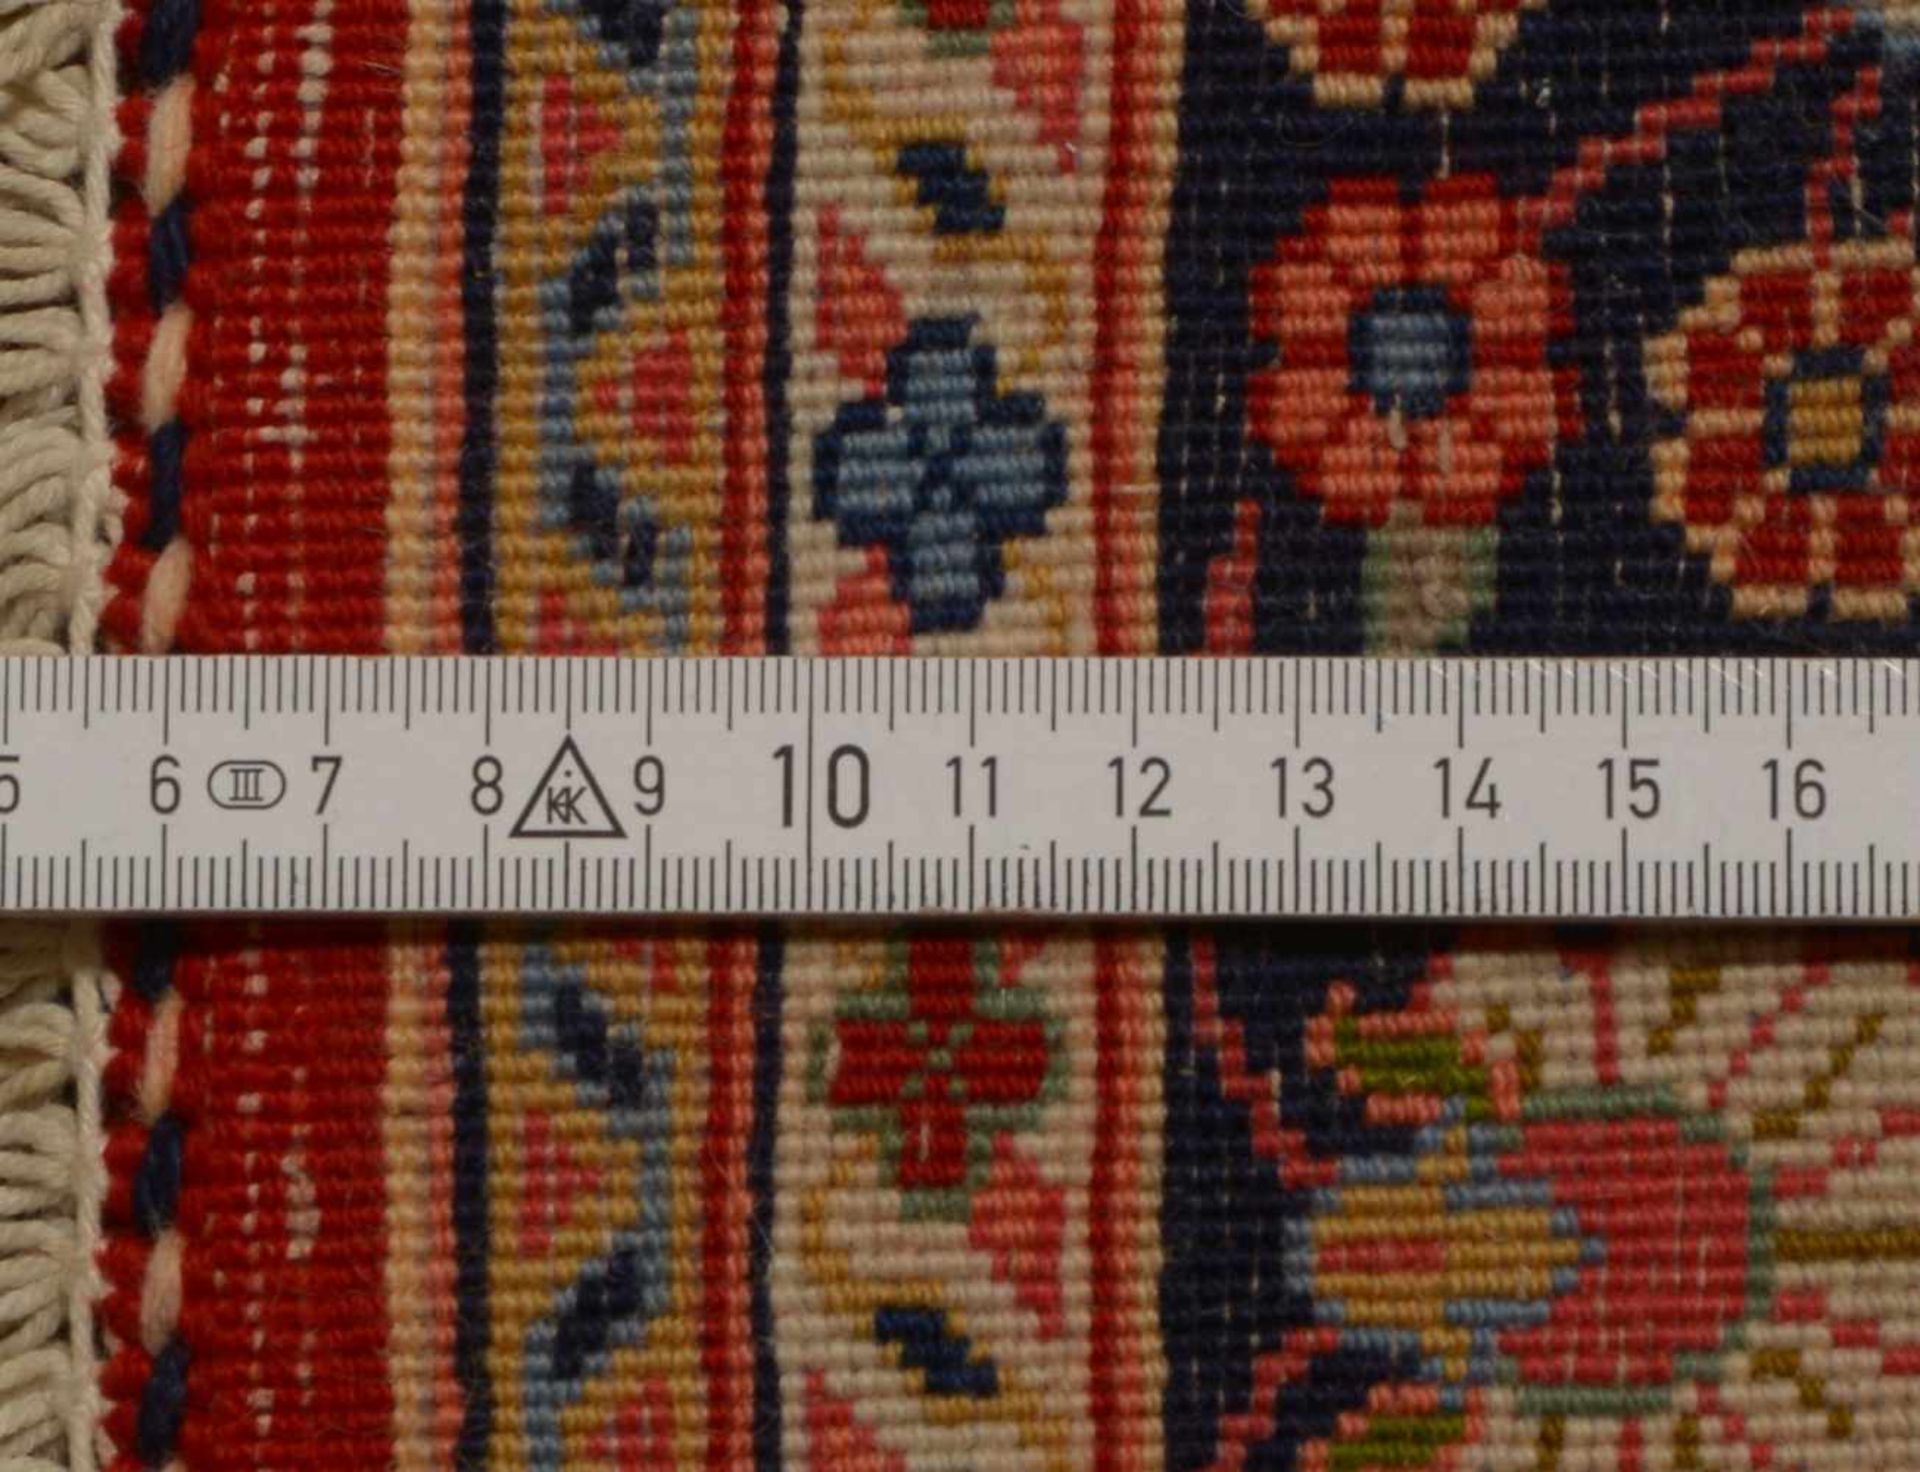 Djosan, sehr feste Knüpfung, hochflorig, komplett und wohnfertig; Maße 144 x 107 cm - Bild 2 aus 2